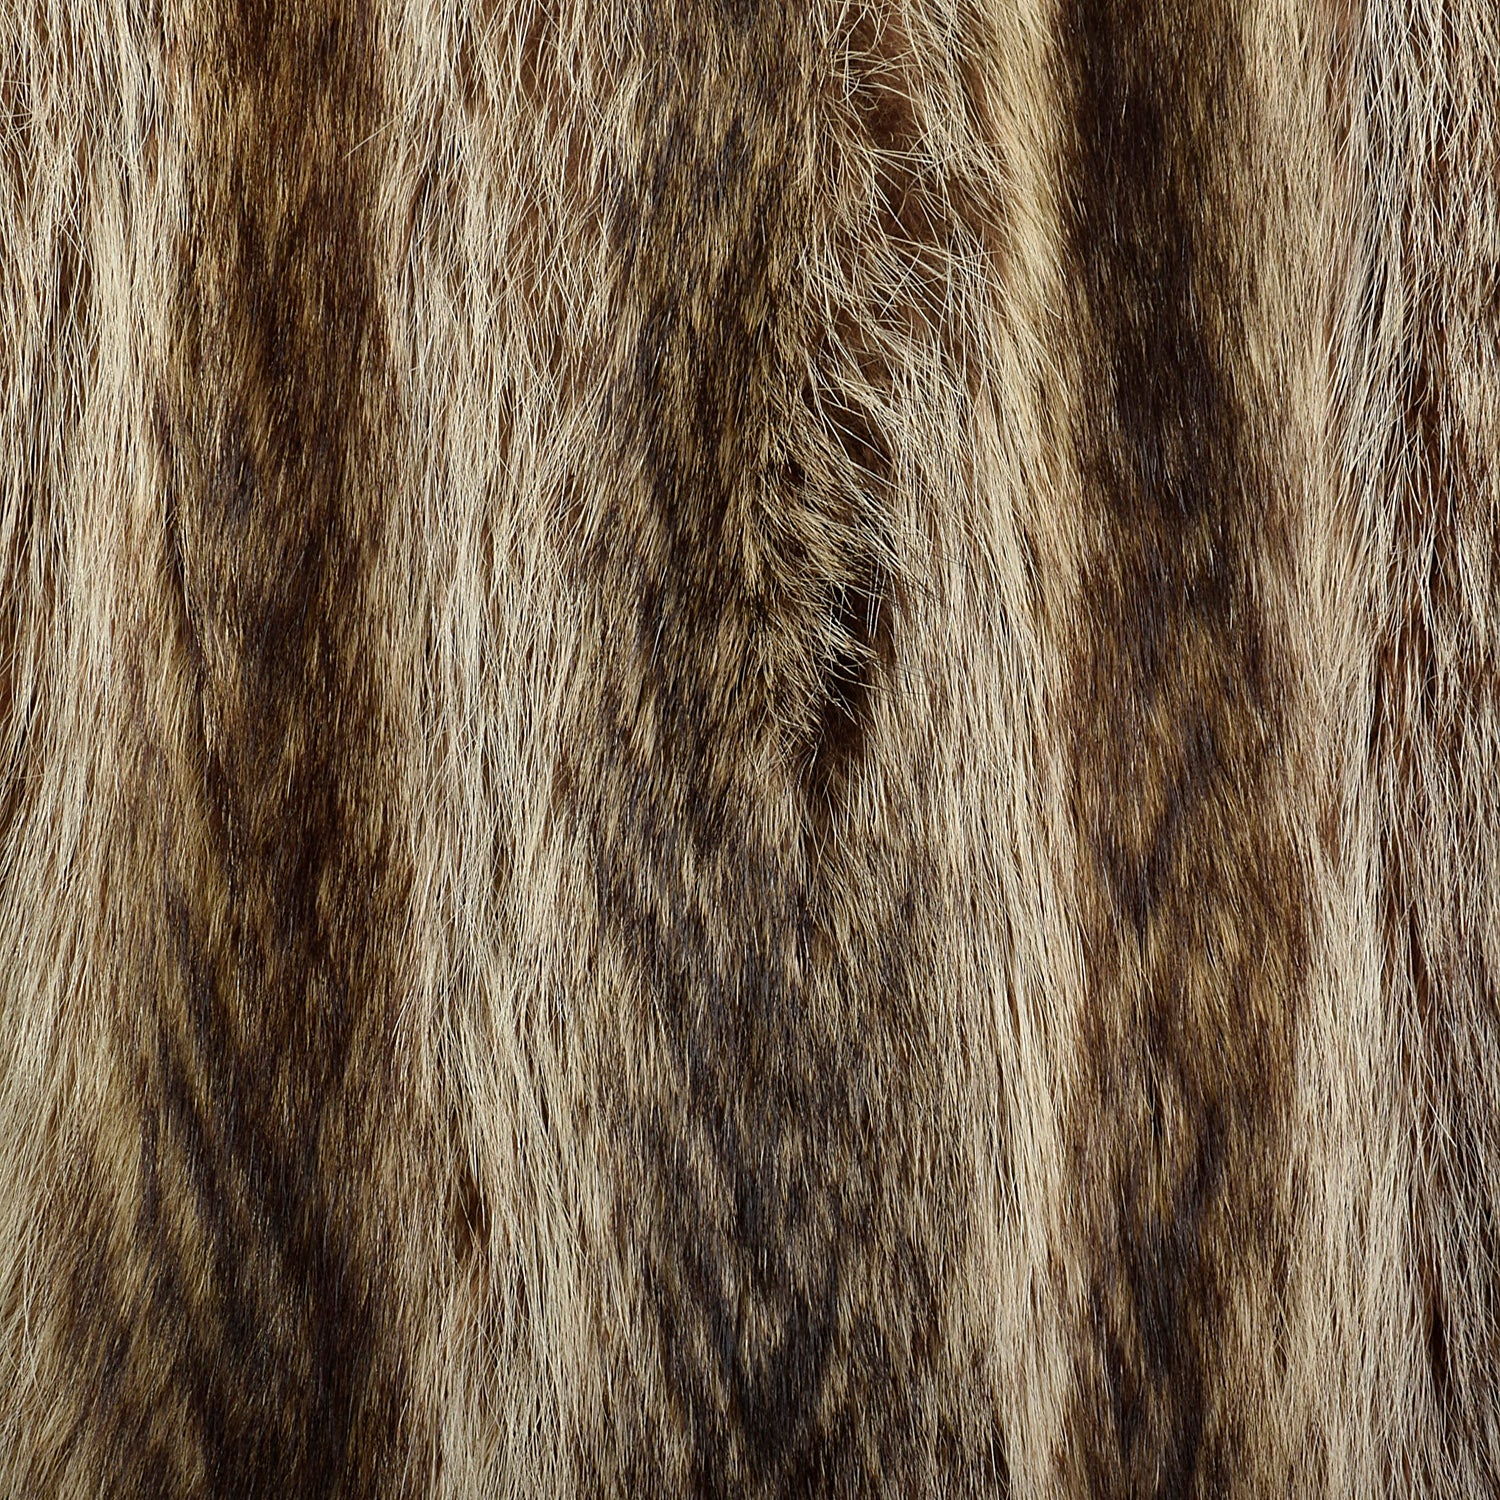 XS 1970s Raccoon Fur Coat